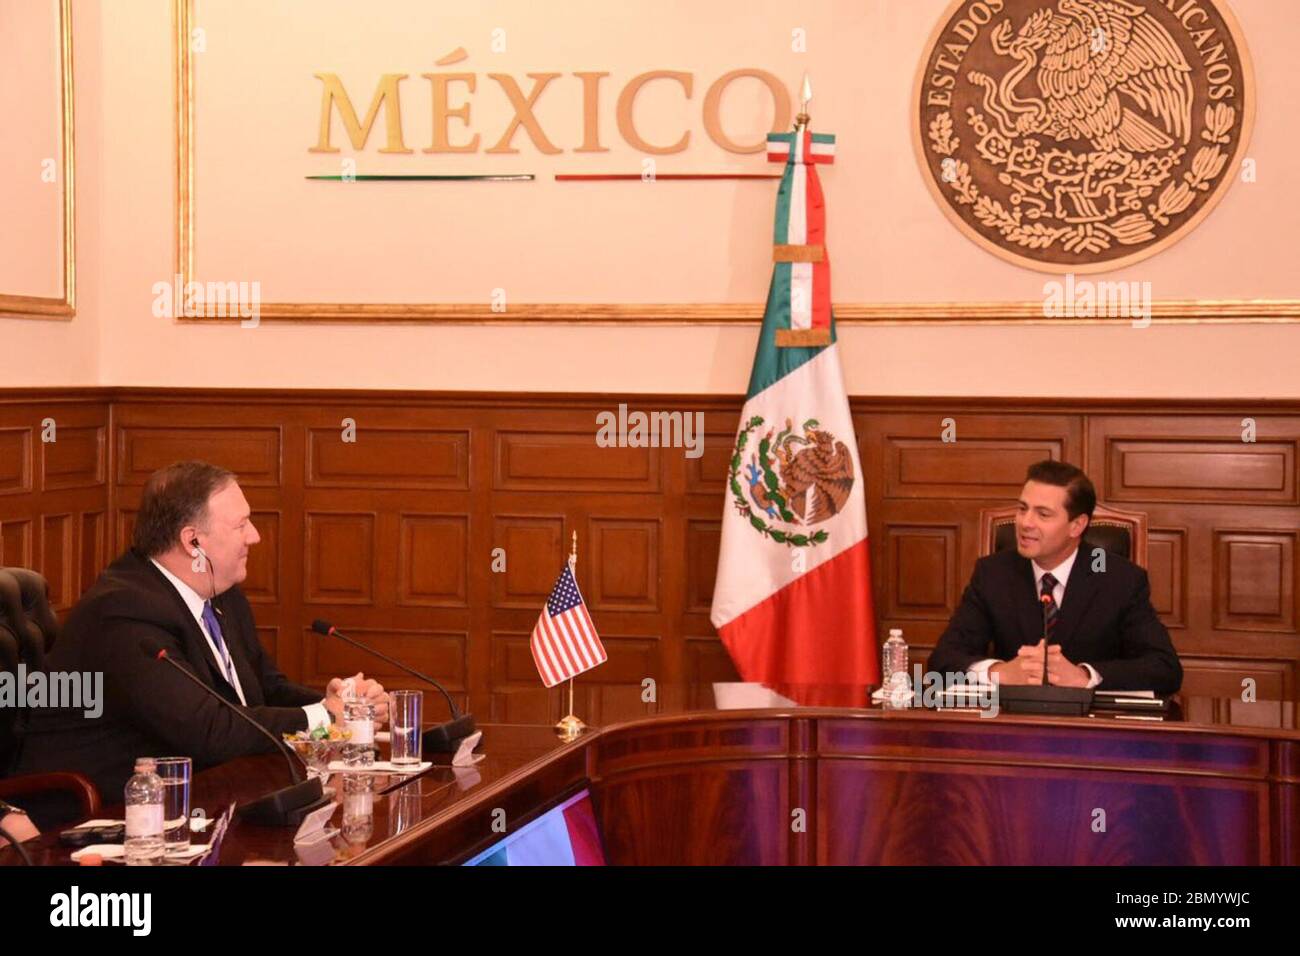 Le secrétaire Pompeo rencontre le président mexicain Nieto à Mexico le secrétaire d’État américain Michael R. Pompeo rencontre le président mexicain Enrique Peña Nieto à Los Pinos à Mexico, Mexique, le 13 juillet 2018. Banque D'Images